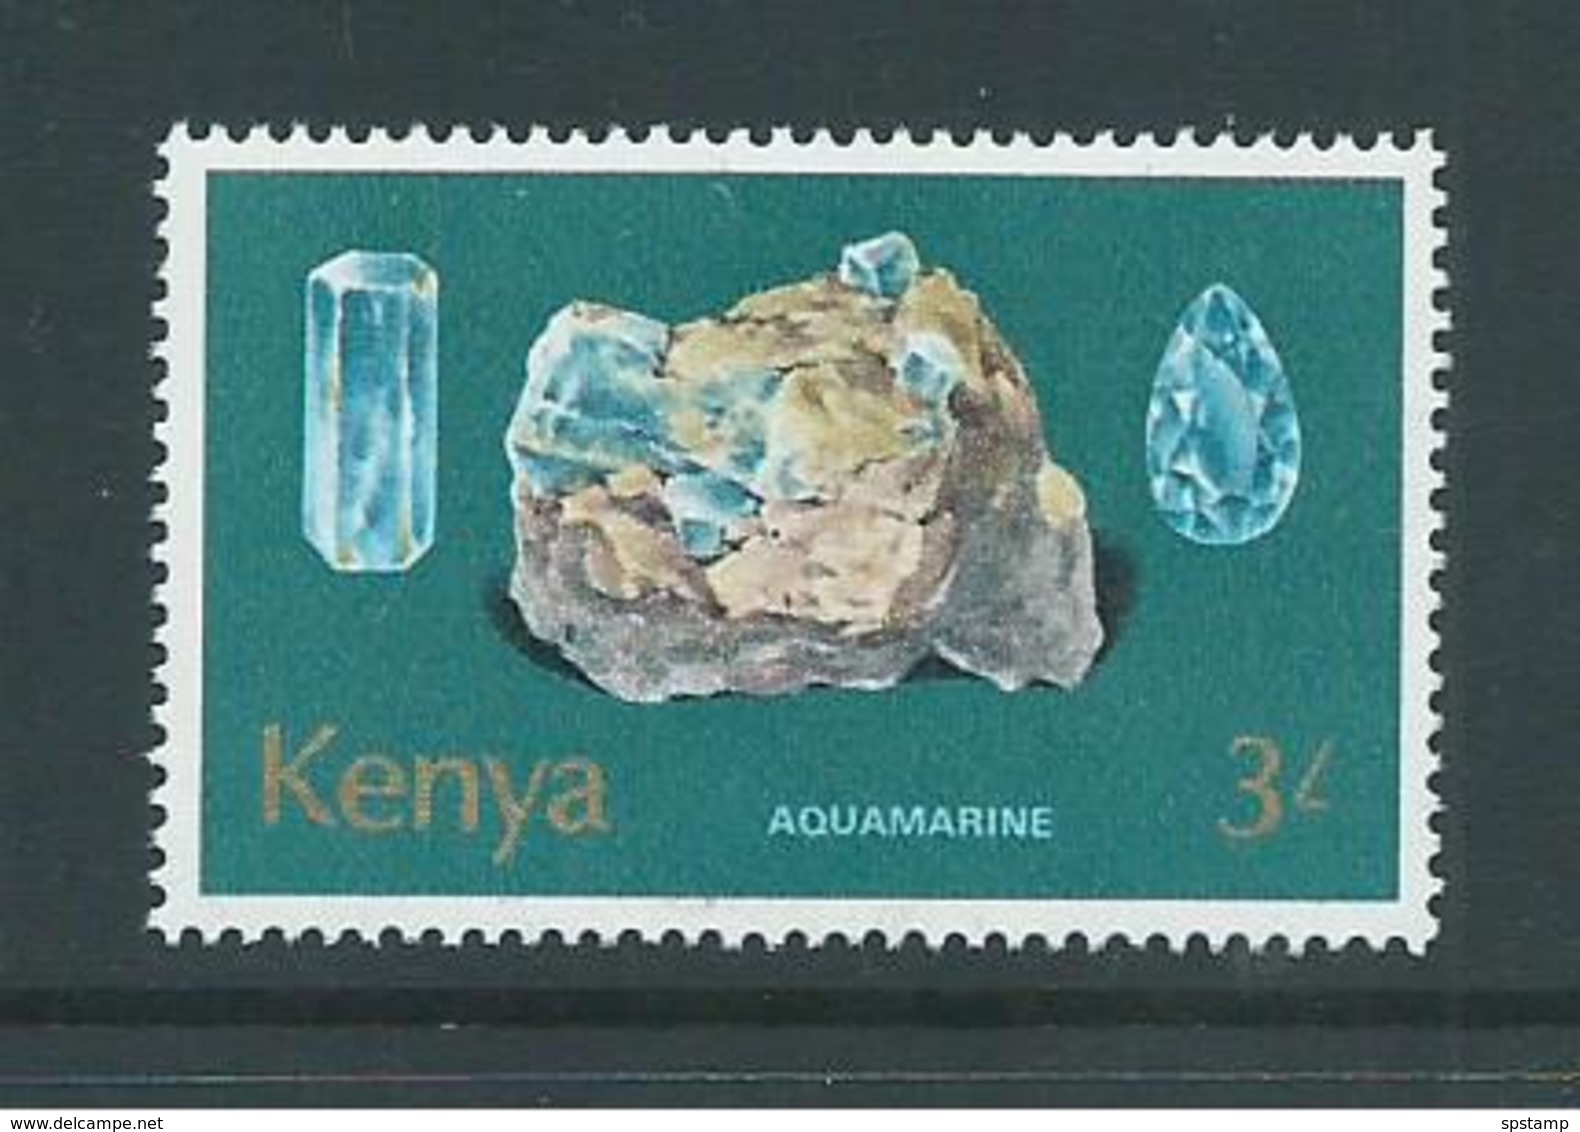 Kenya 1977 Minerals 3/- Aquamarine MNH - Kenya (1963-...)